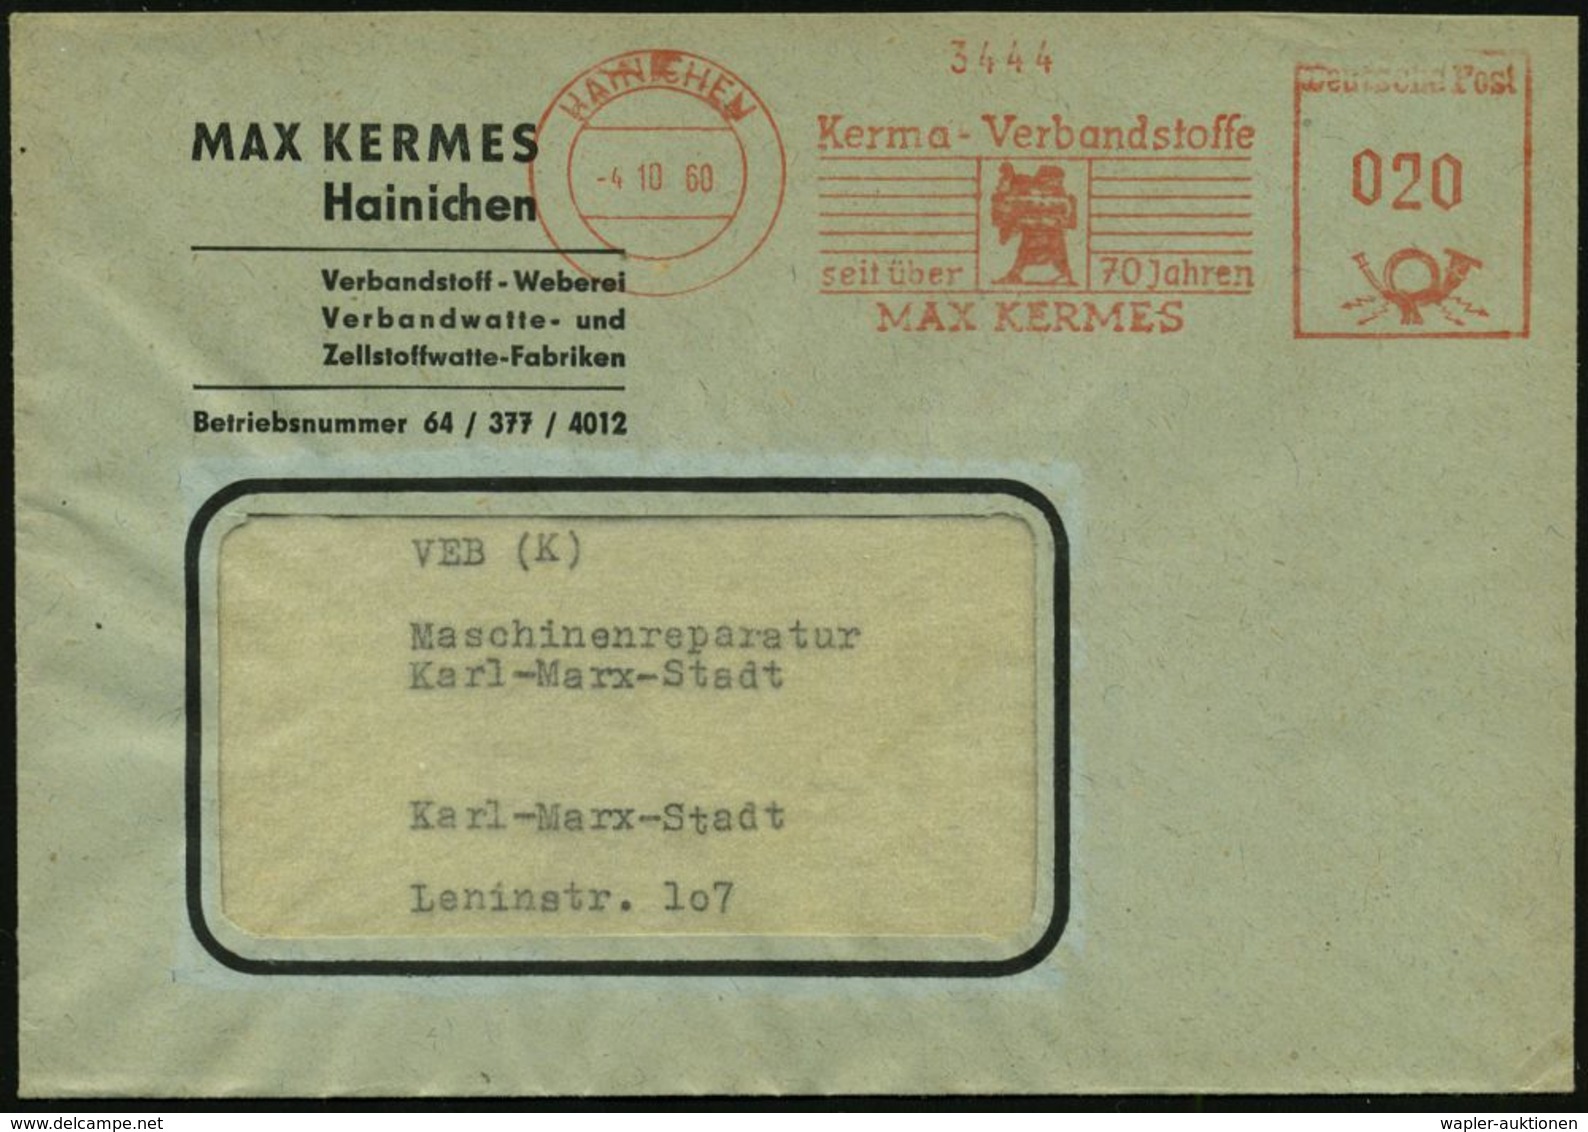 MEDIZINISCHE AUSRÜSTUNG & INSTRUMENTE : HAINICHEN/ Kerma-Verbandsstoffe/ Seit über 70 Jahren/ MAX KERMES 1960 (4.10.) AF - Medizin